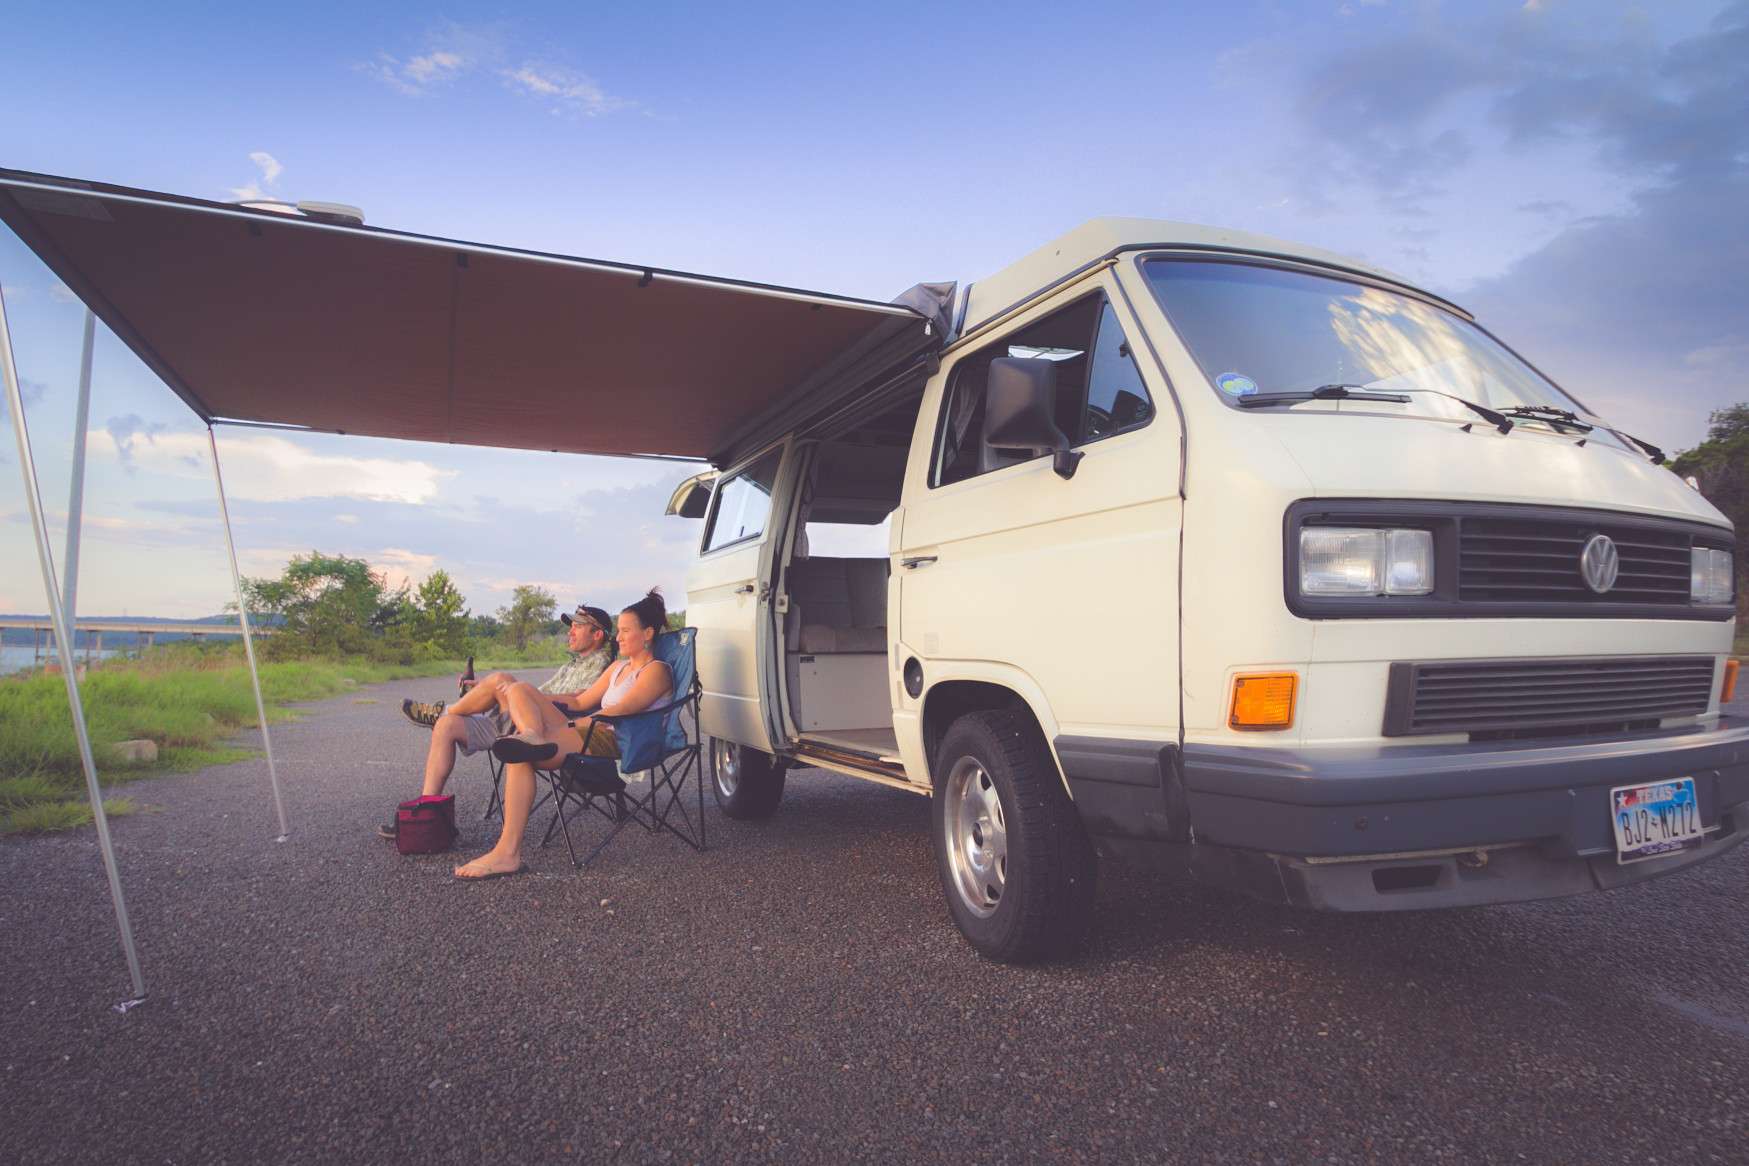 Couple boondocking in camper van